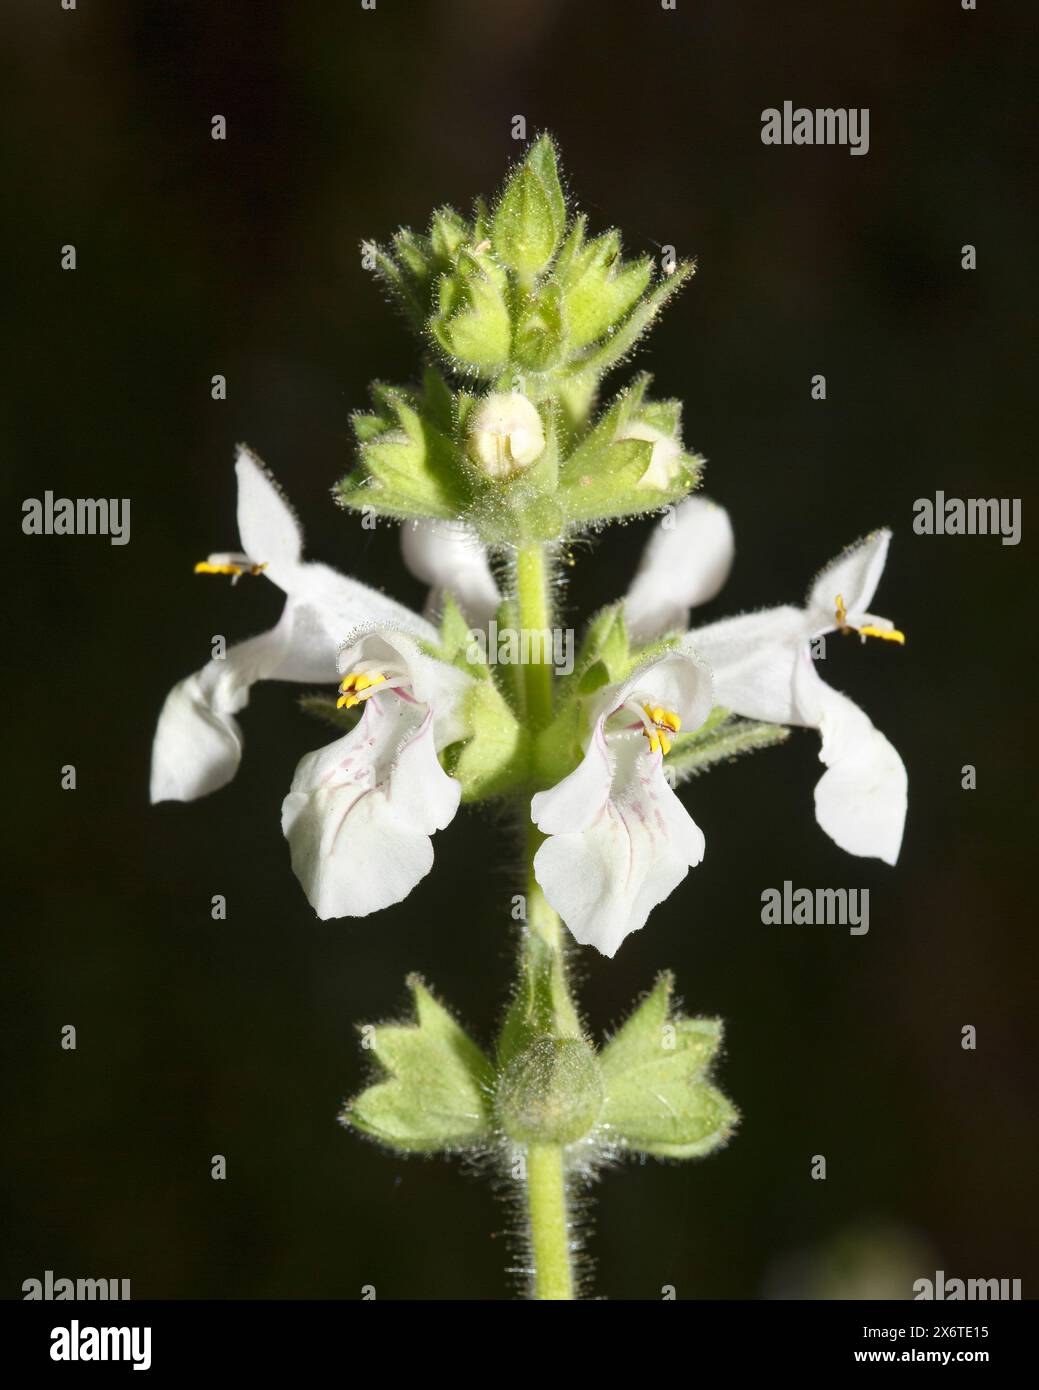 Winter Savory (Satureja montana) flower head in Mediterranean viewed with a dark background Stock Photo